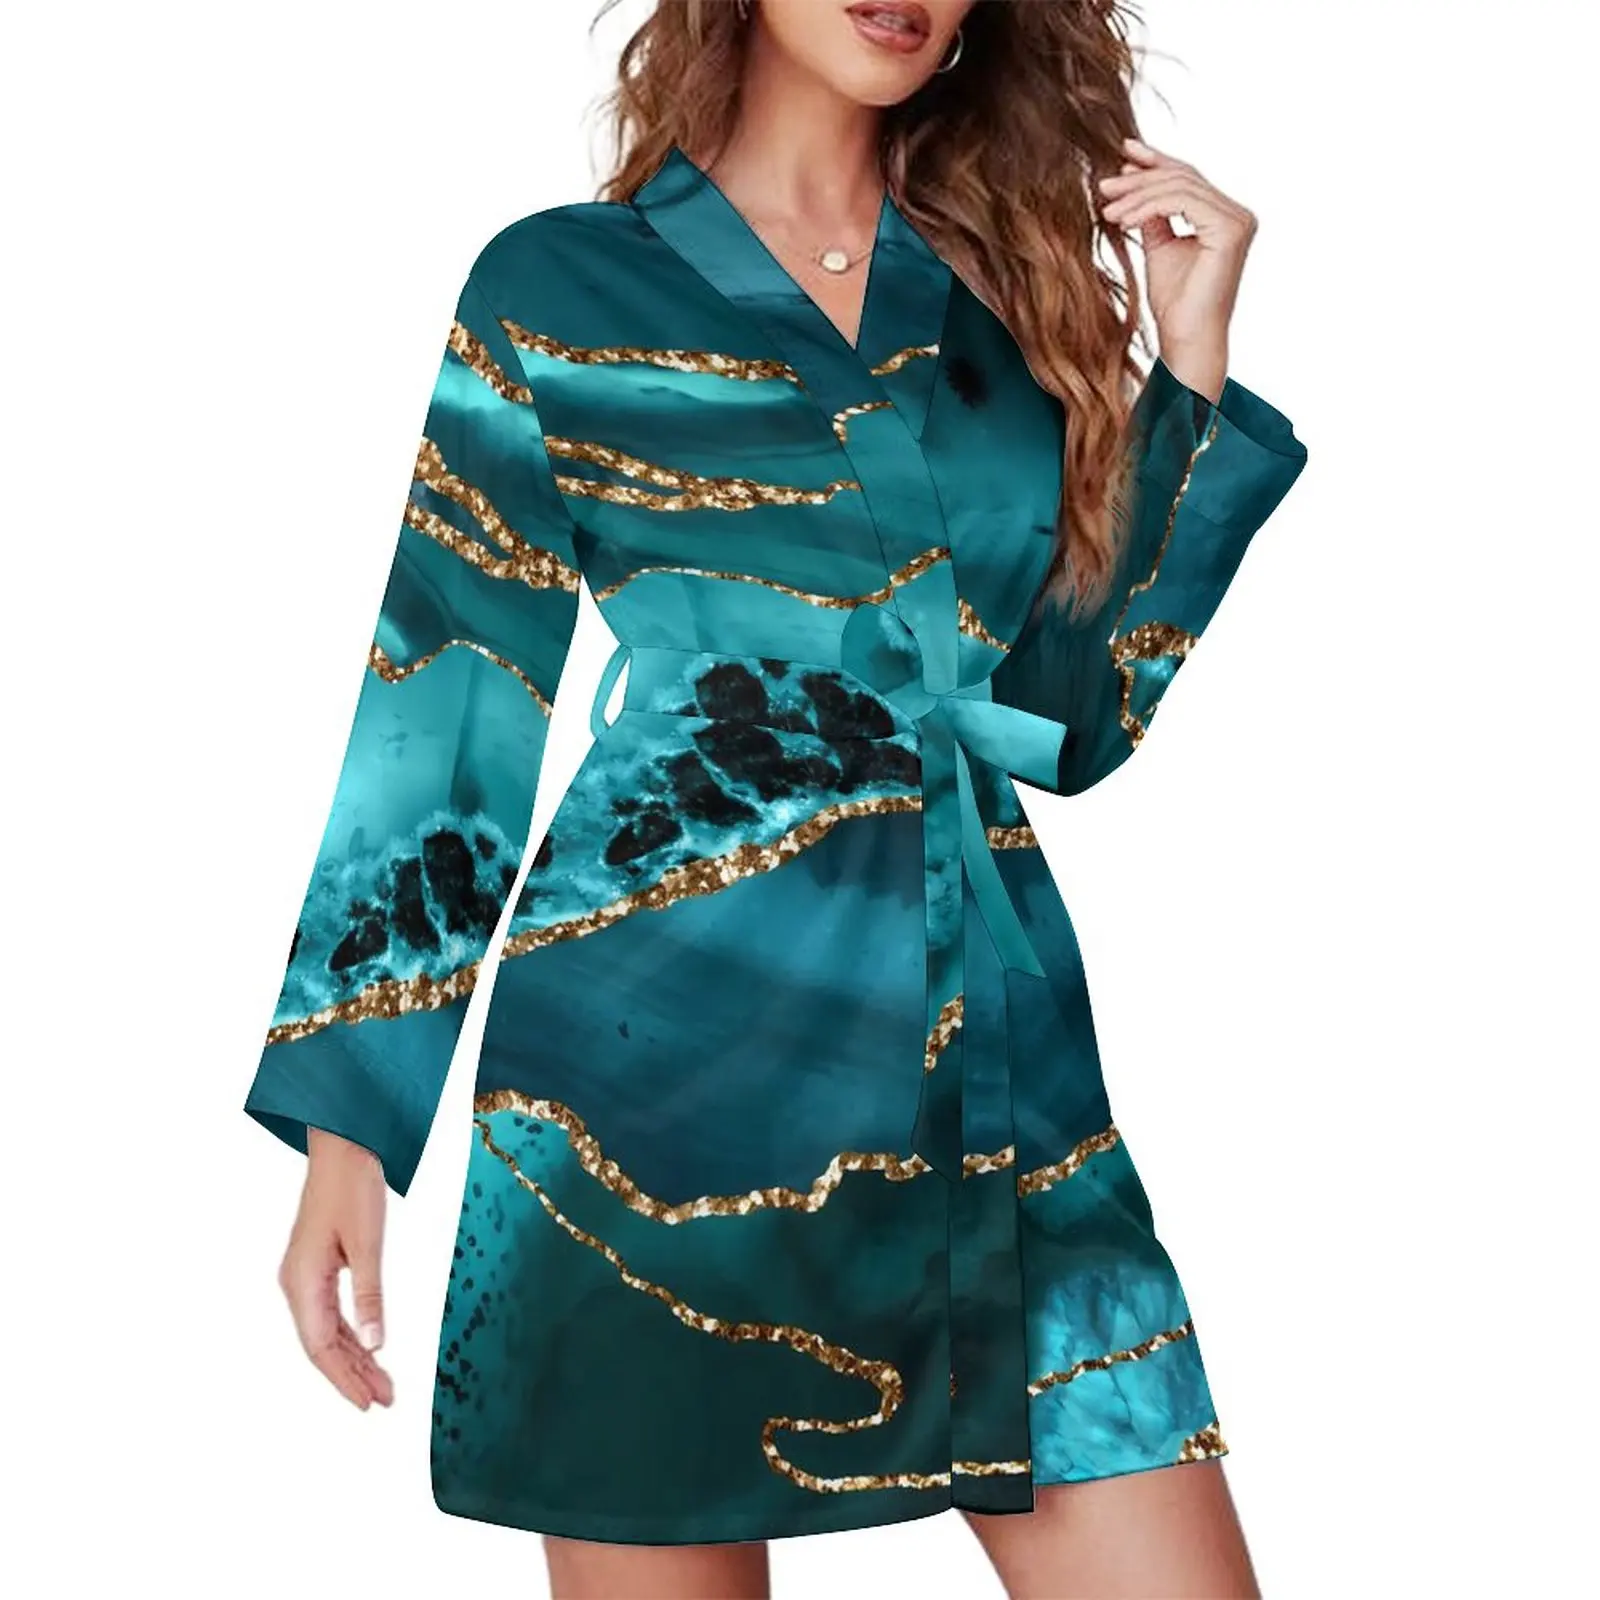 

Блестящий Мраморный Пижамный халат синяя и Золотая пижама с длинным рукавом для сна Халаты женские модные пижамы с V-образным вырезом весеннее платье на заказ